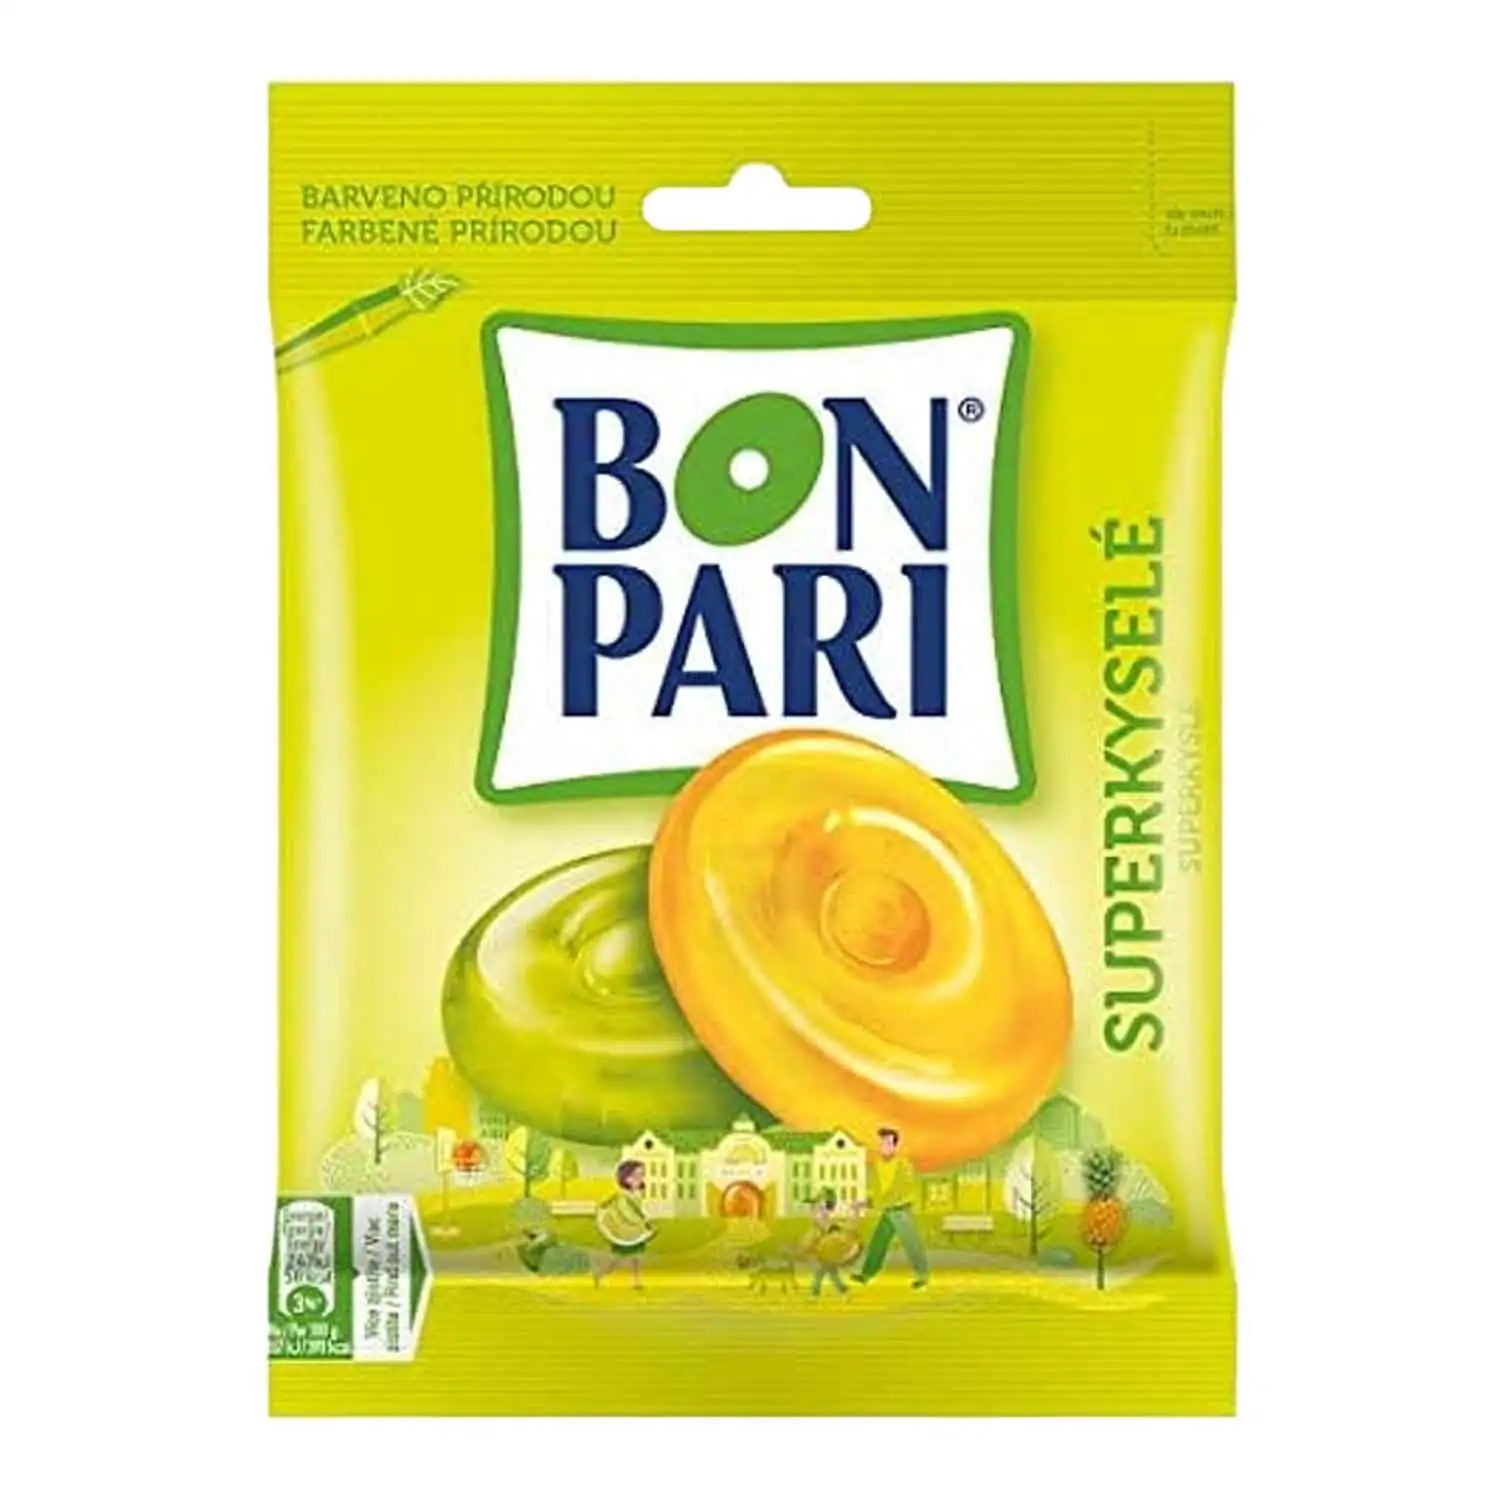 Bon Pari super acide 90g - Buy at Real Tobacco